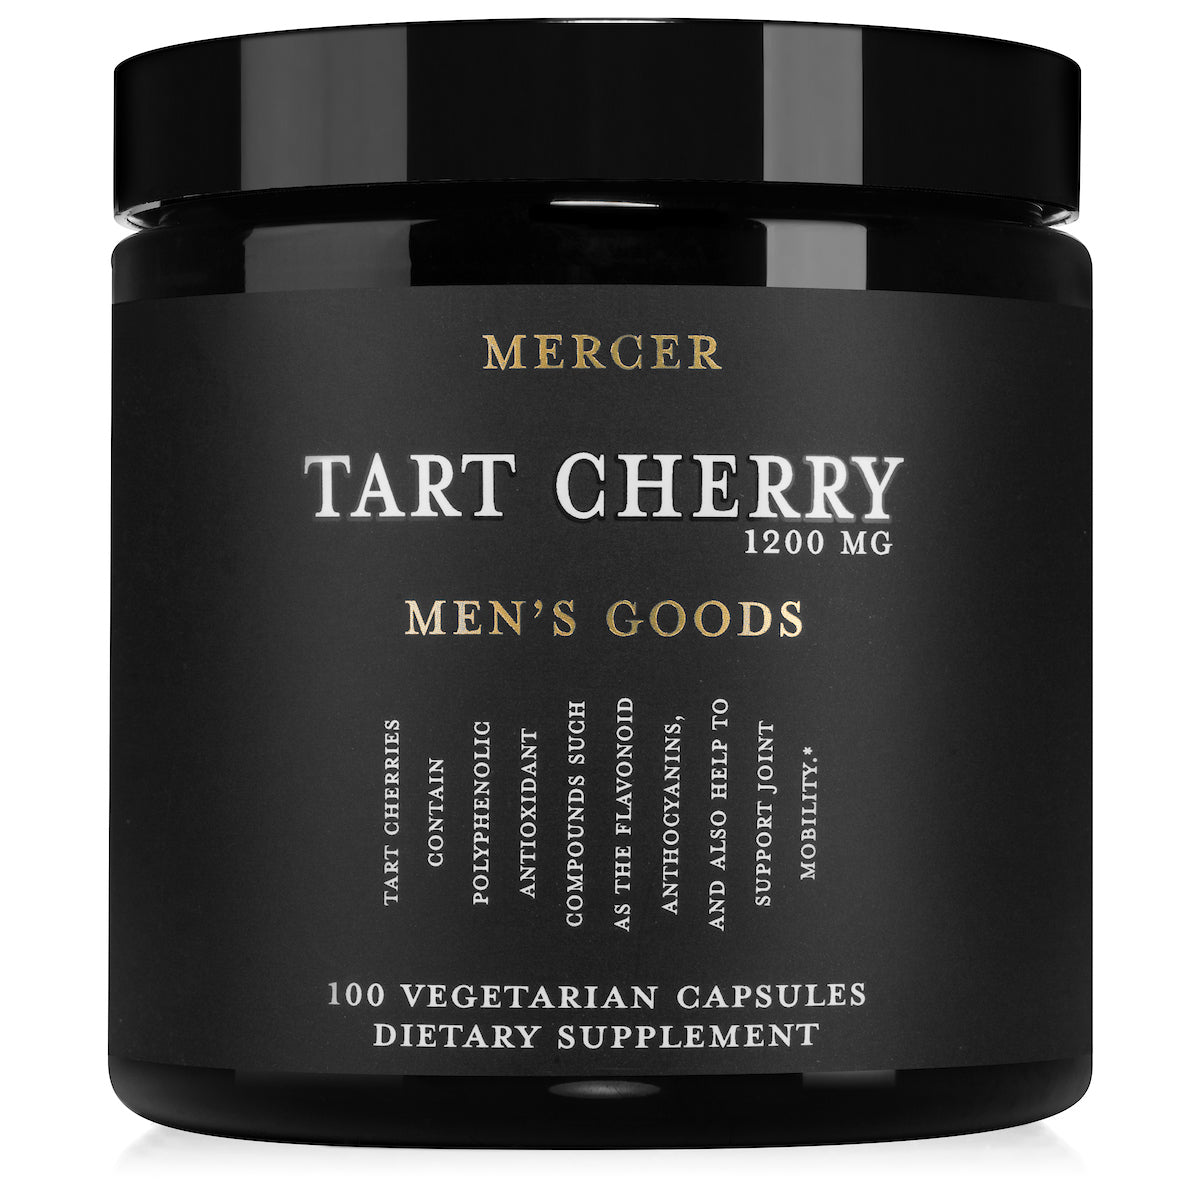 Mercer Tart Cherry